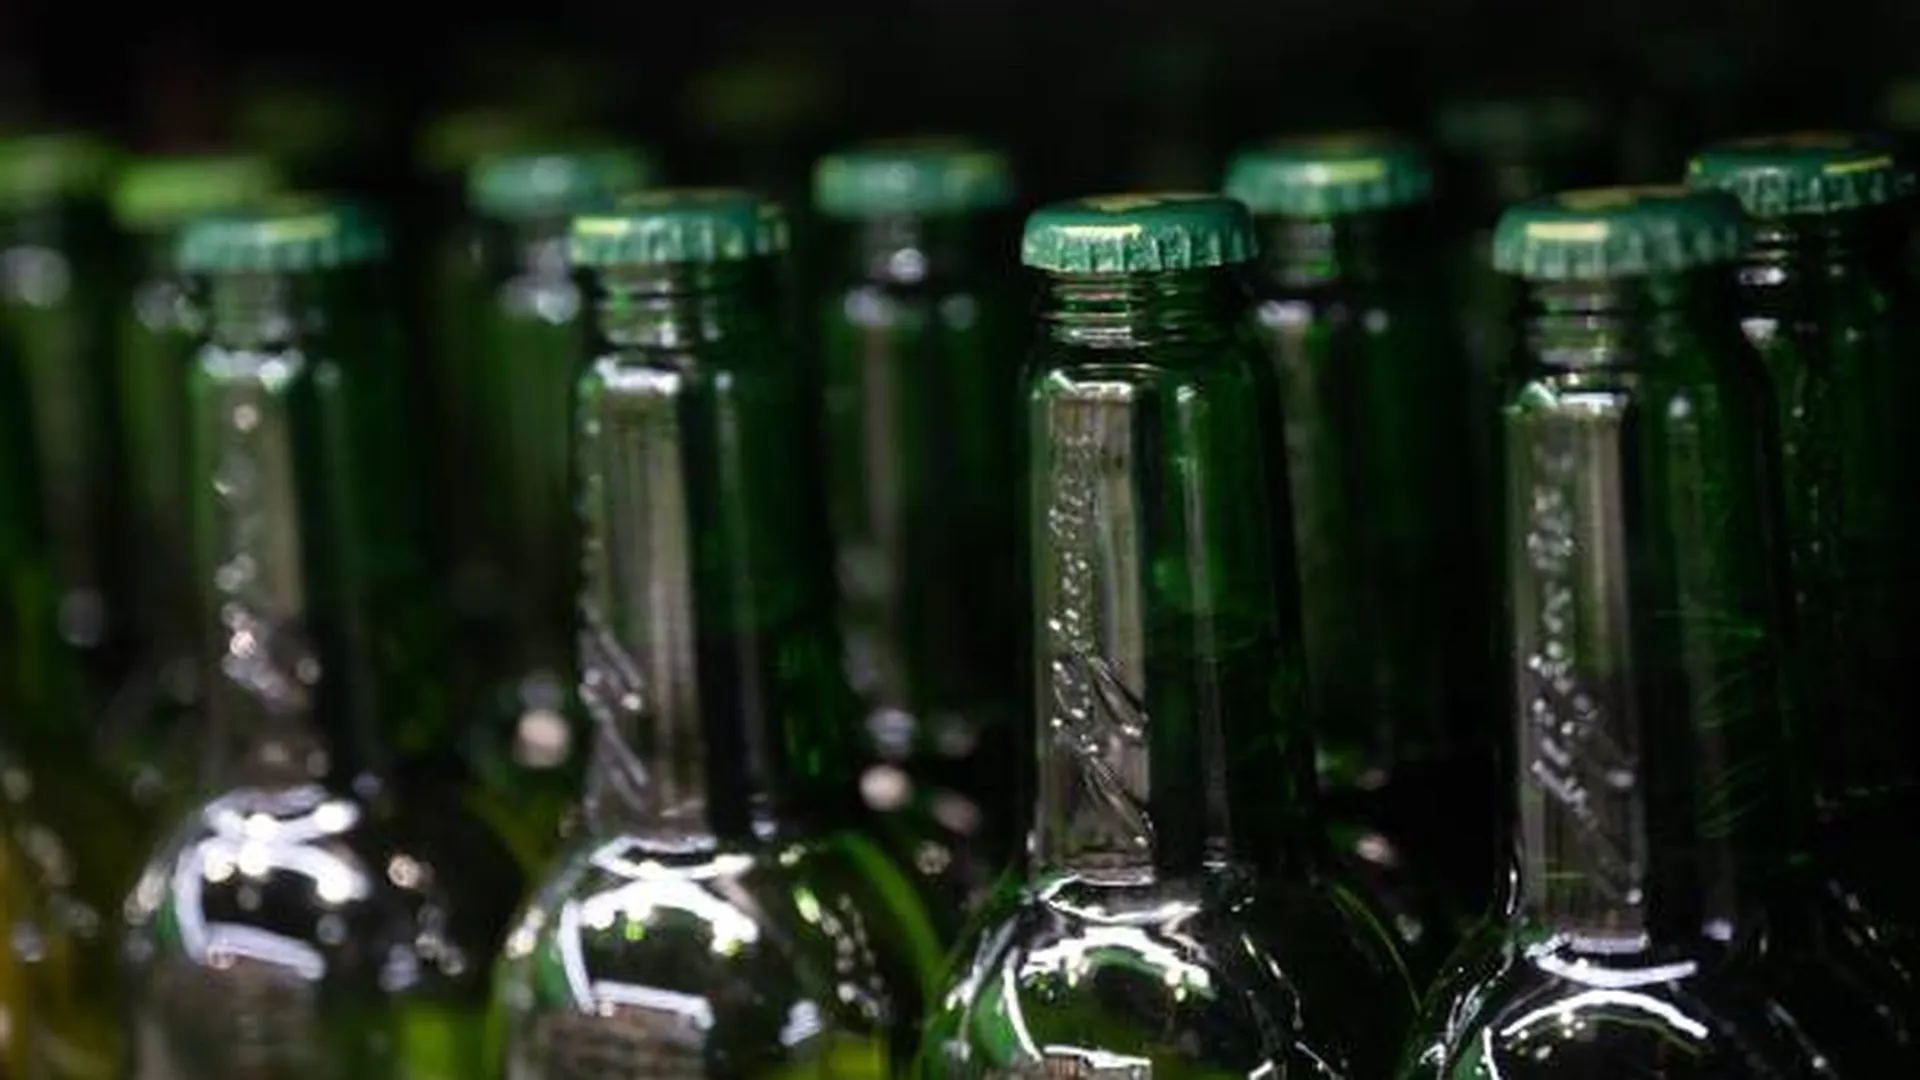 Лицензию магазина на алкоголь теперь можно проверить на Геопортале Подмосковья